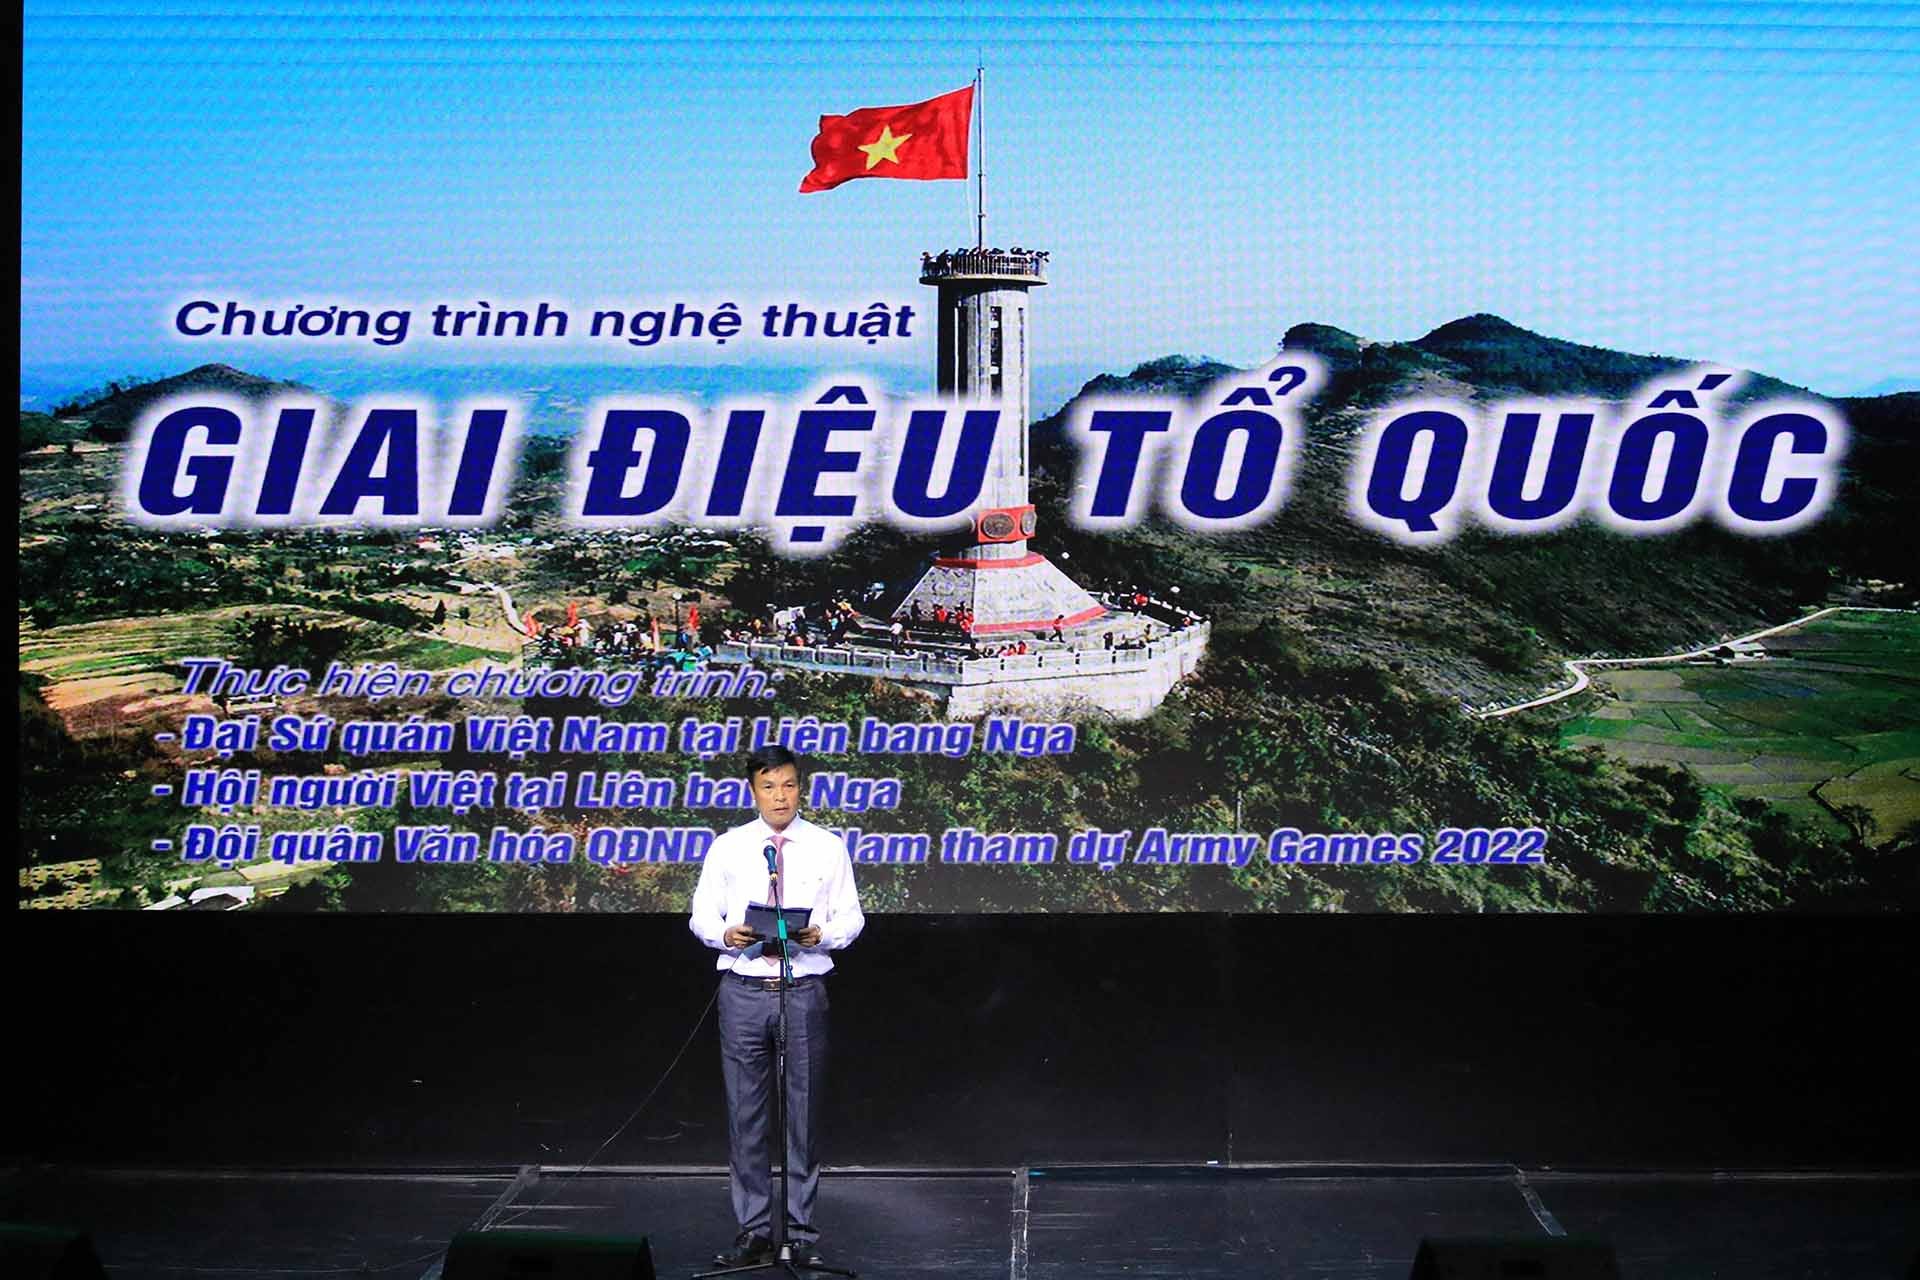 Đại tá Tạ Quang Thảo, Phó cục trưởng Cục Quân huấn, Trưởng đoàn Đoàn Quân đội nhân dân Việt Nam tham gia Hội thao quân sự quốc tế (Army Games 2022) tại Nga phát biểu khai mạc chương trình. (Nguồn: TTXVN)